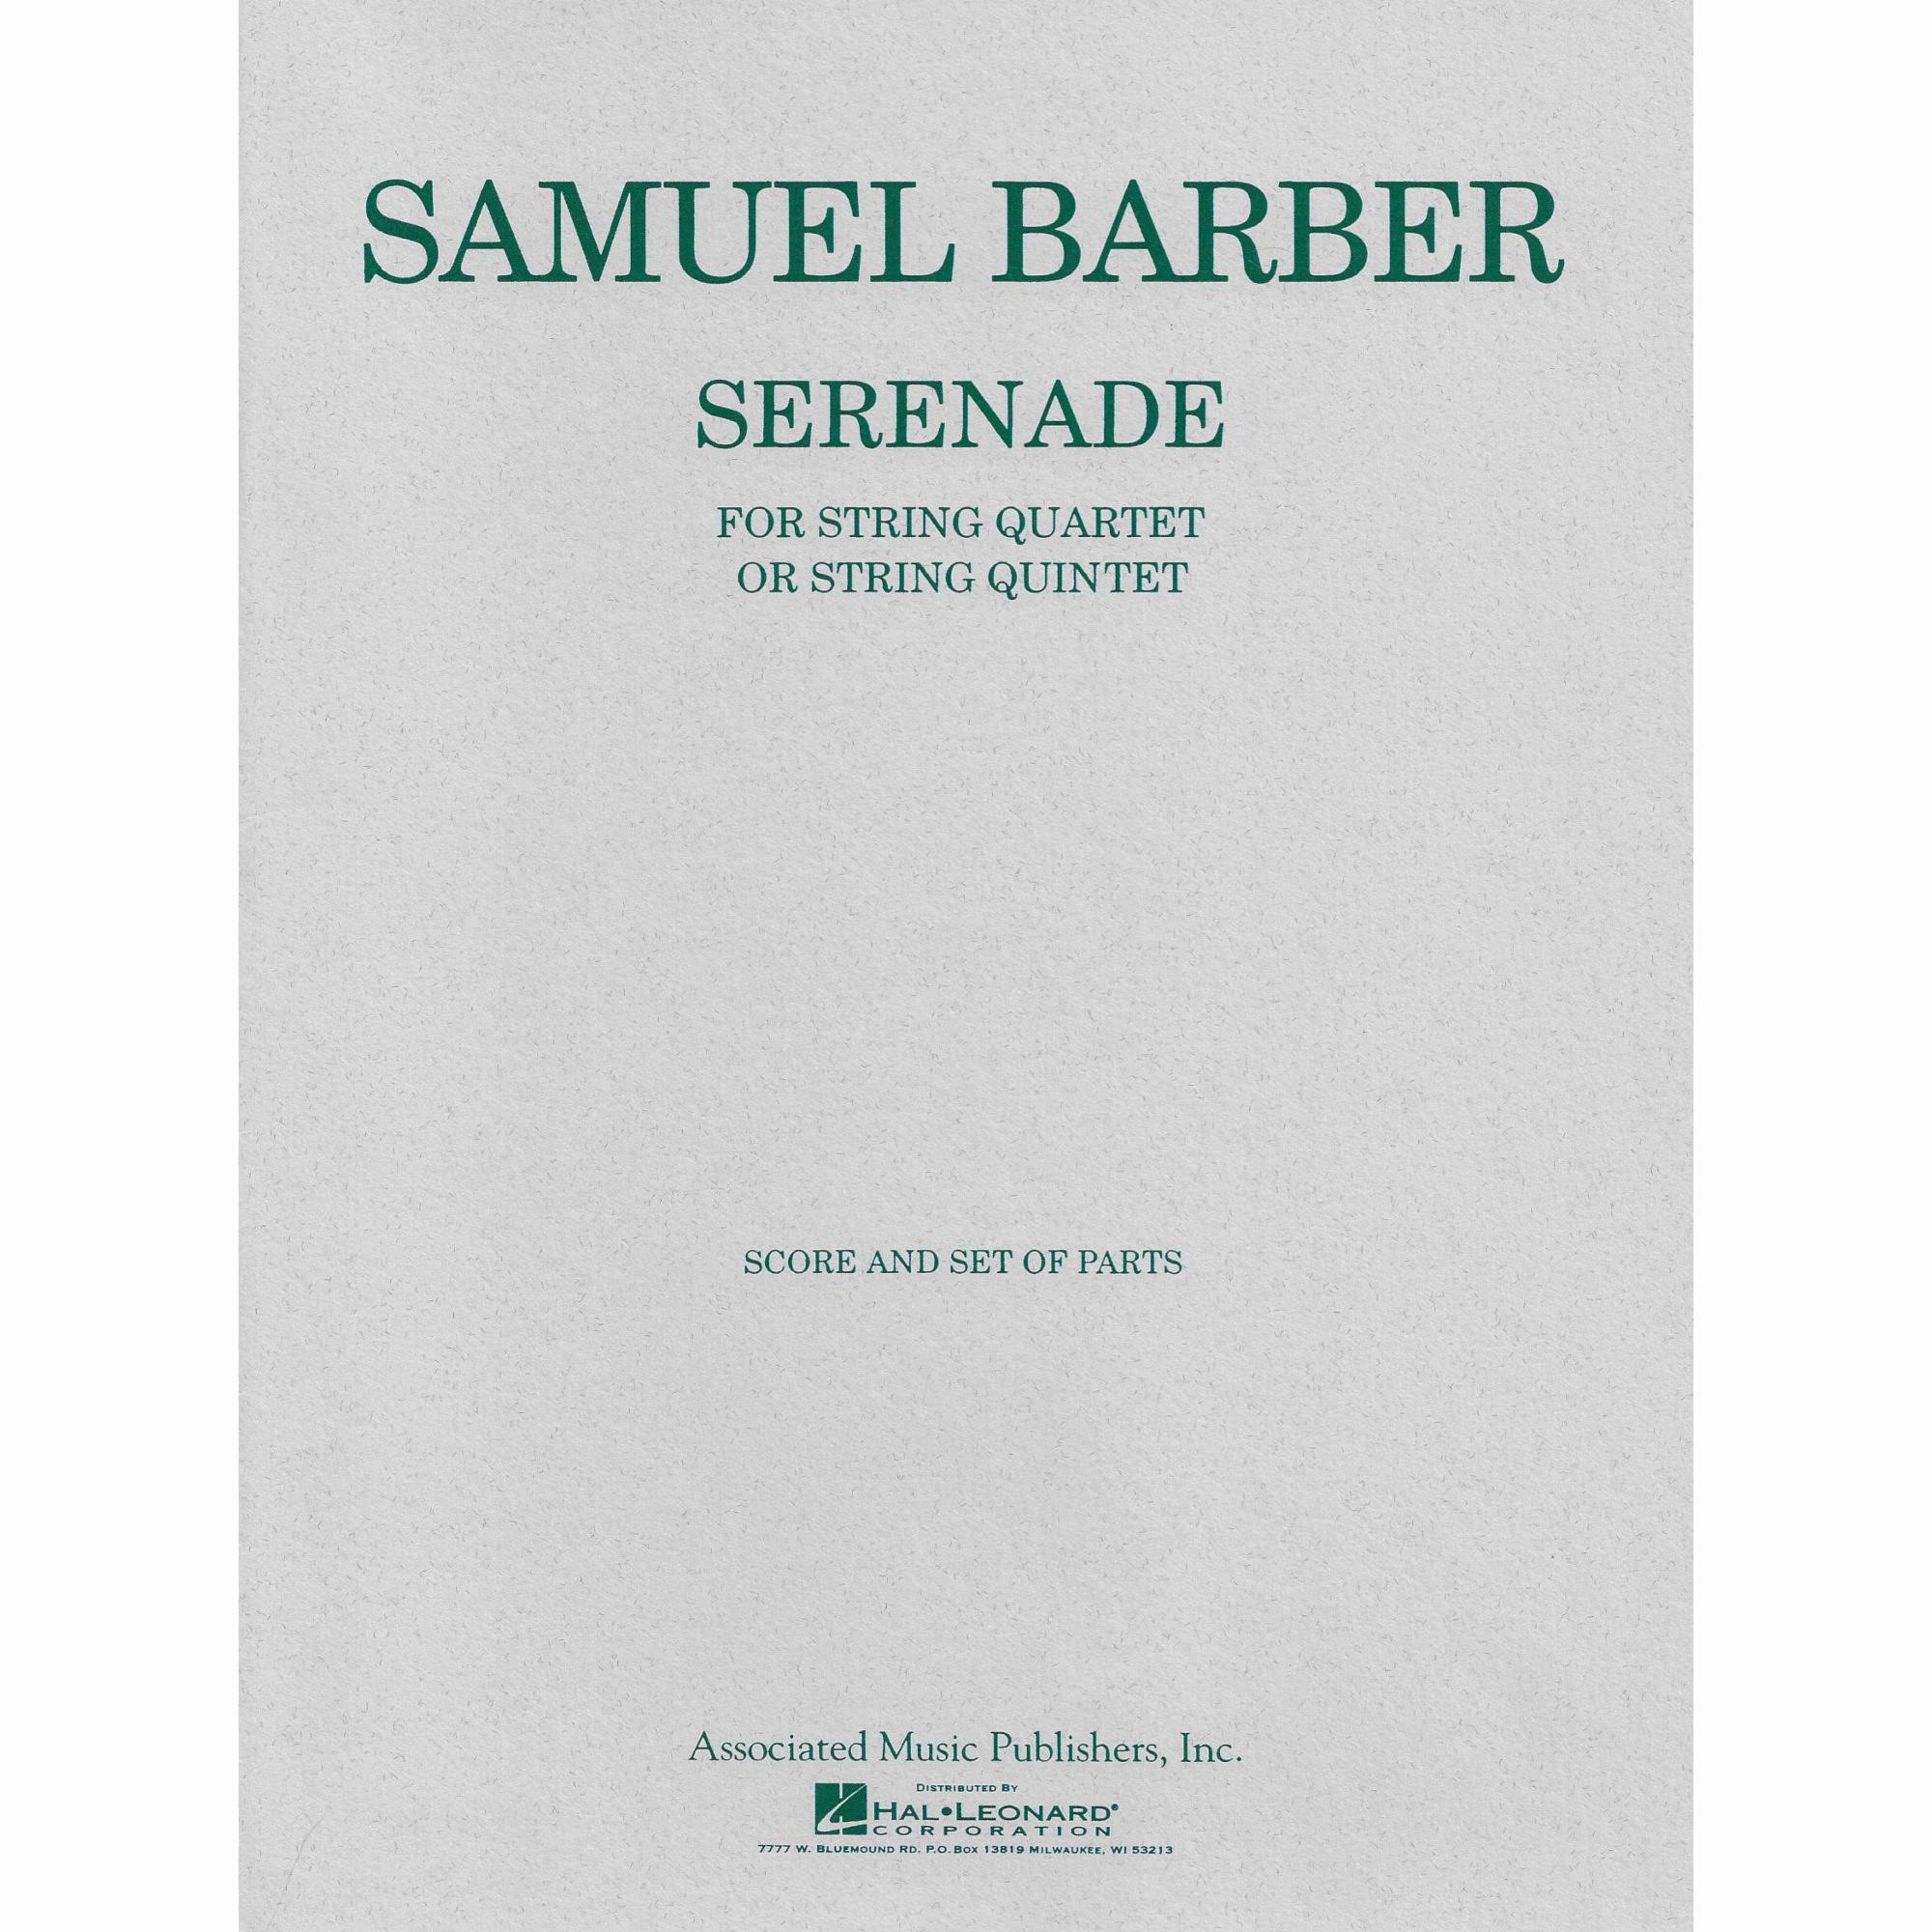 Barber -- Serenade, Op. 1 for String Quartet